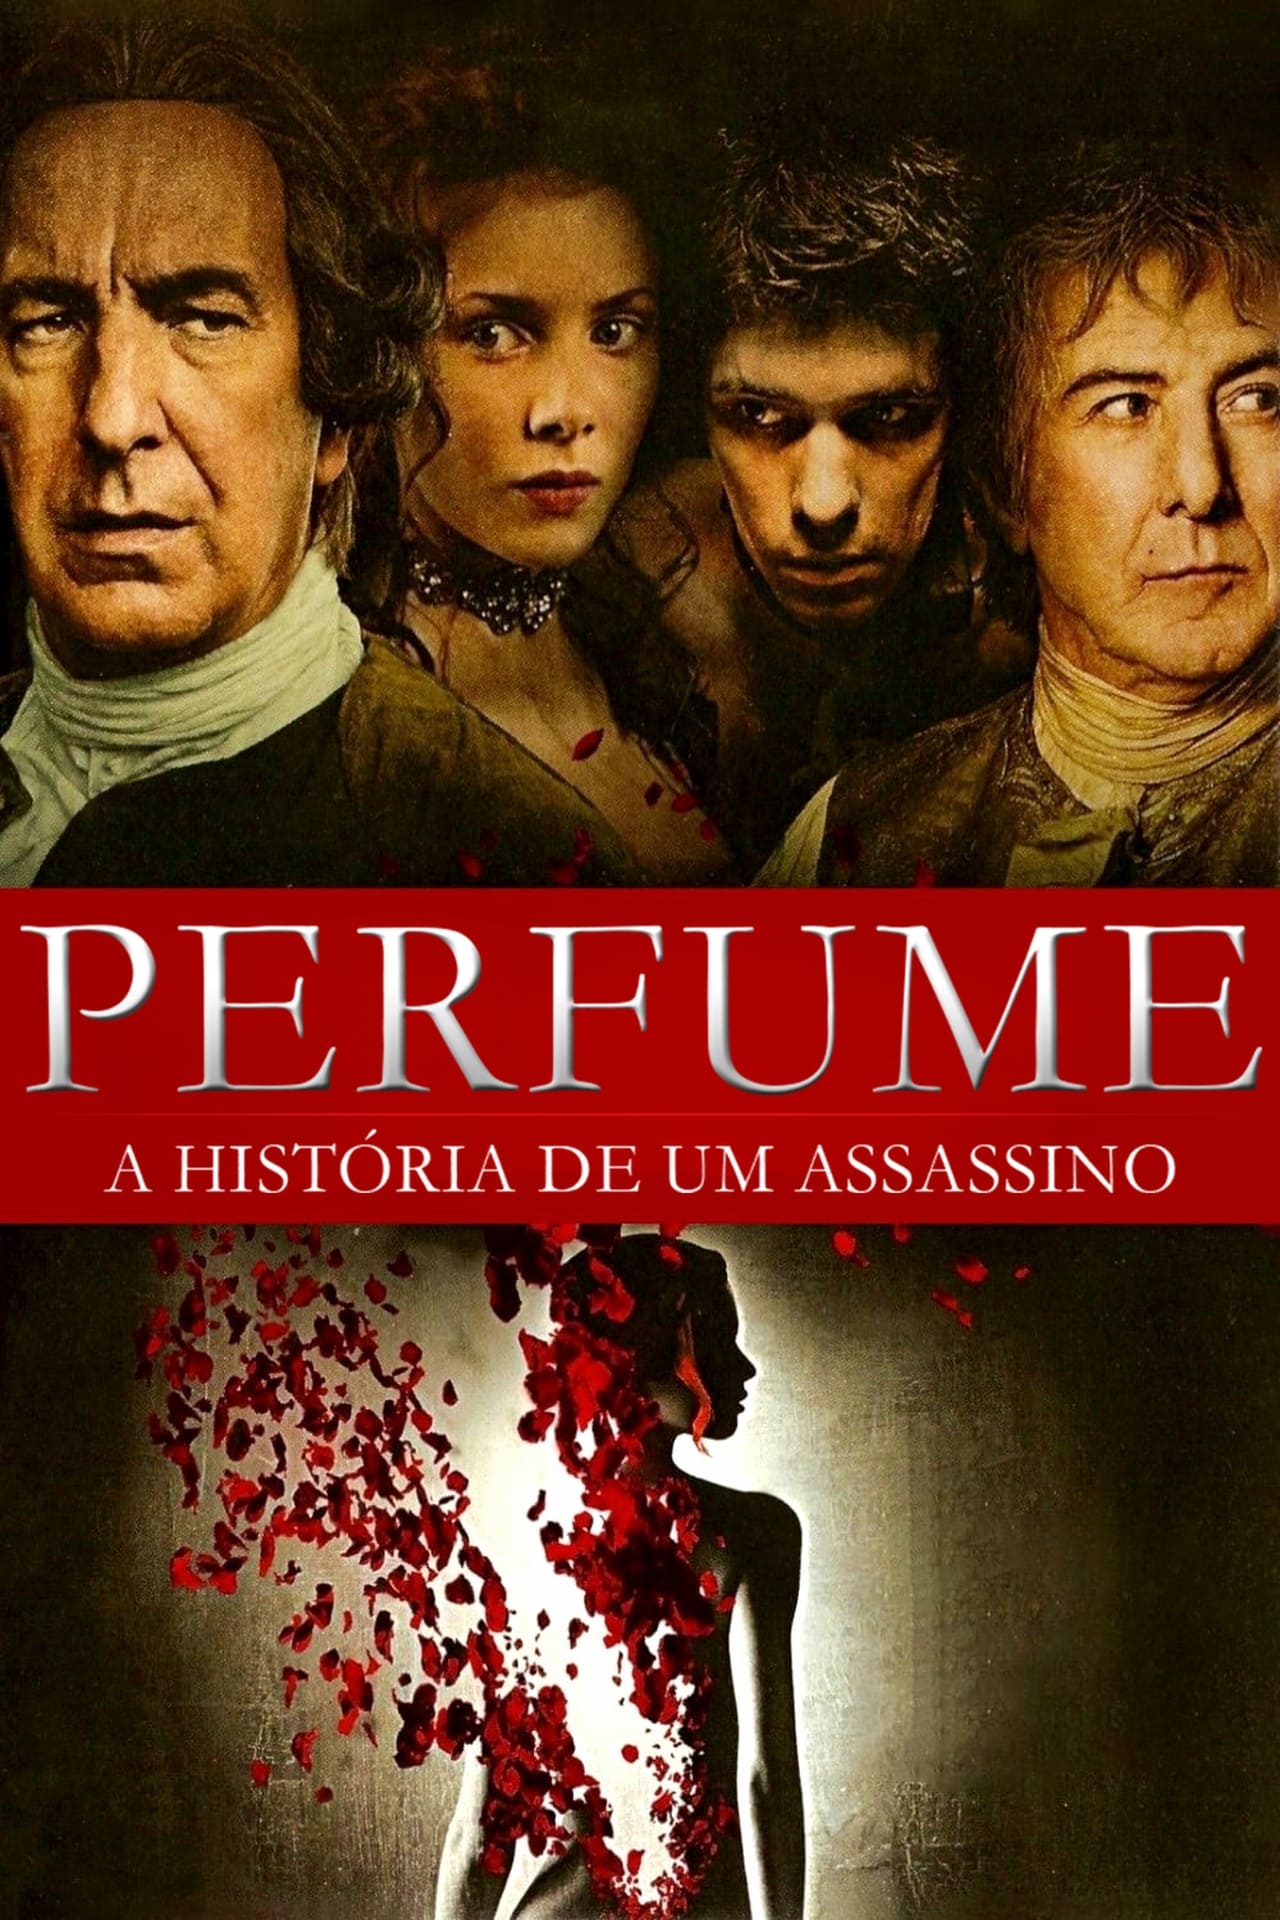 Perfume: A História de um Assassino Dublado Online